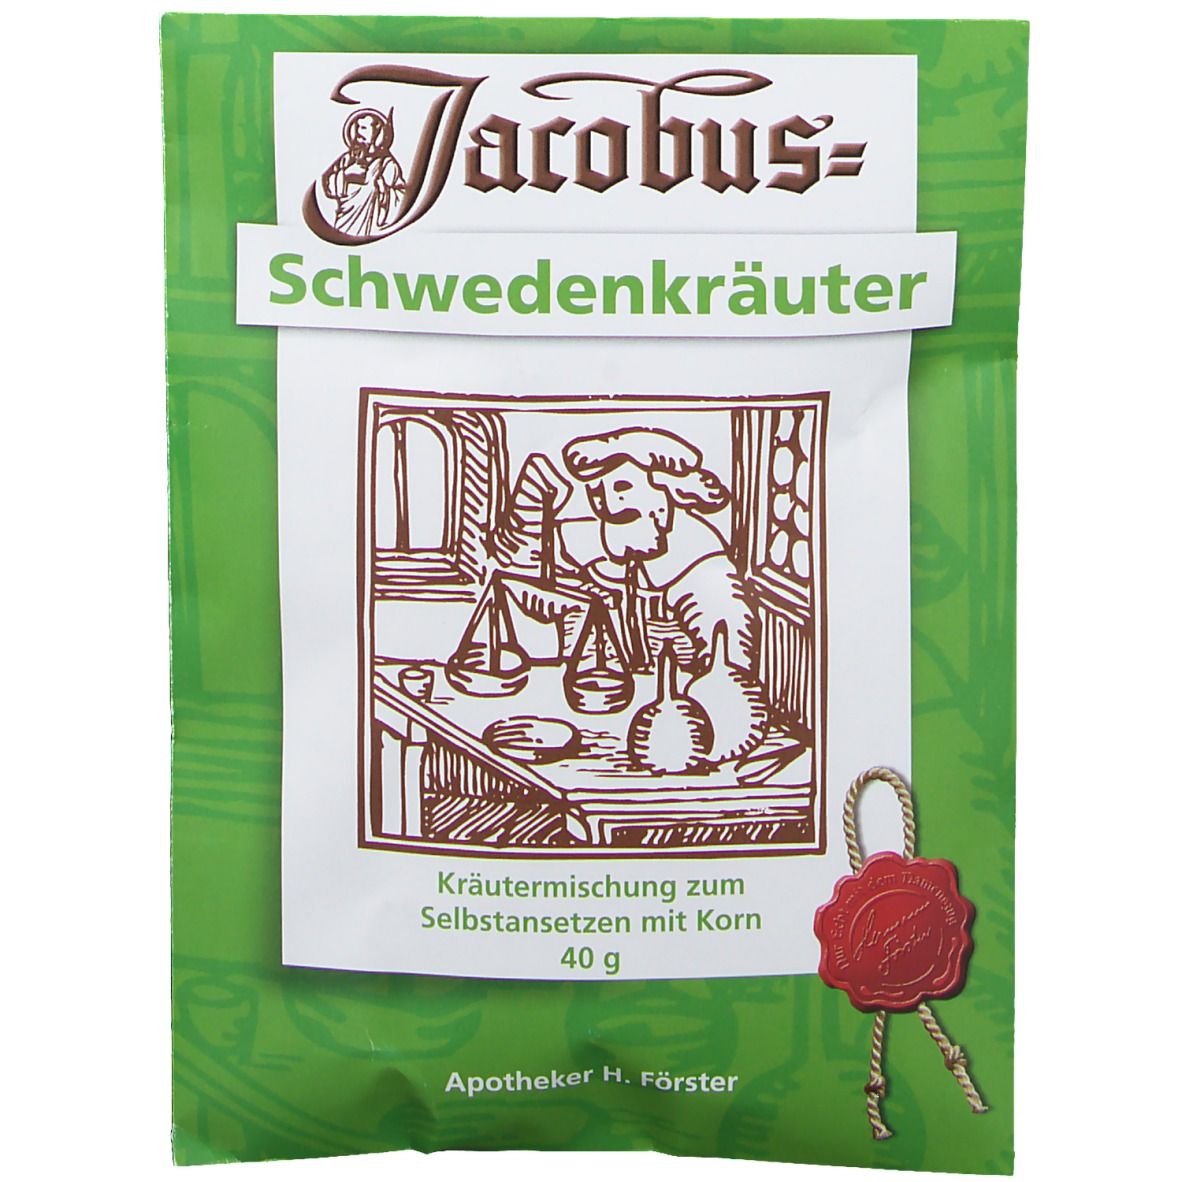 Jacobus Schwedenkräuter